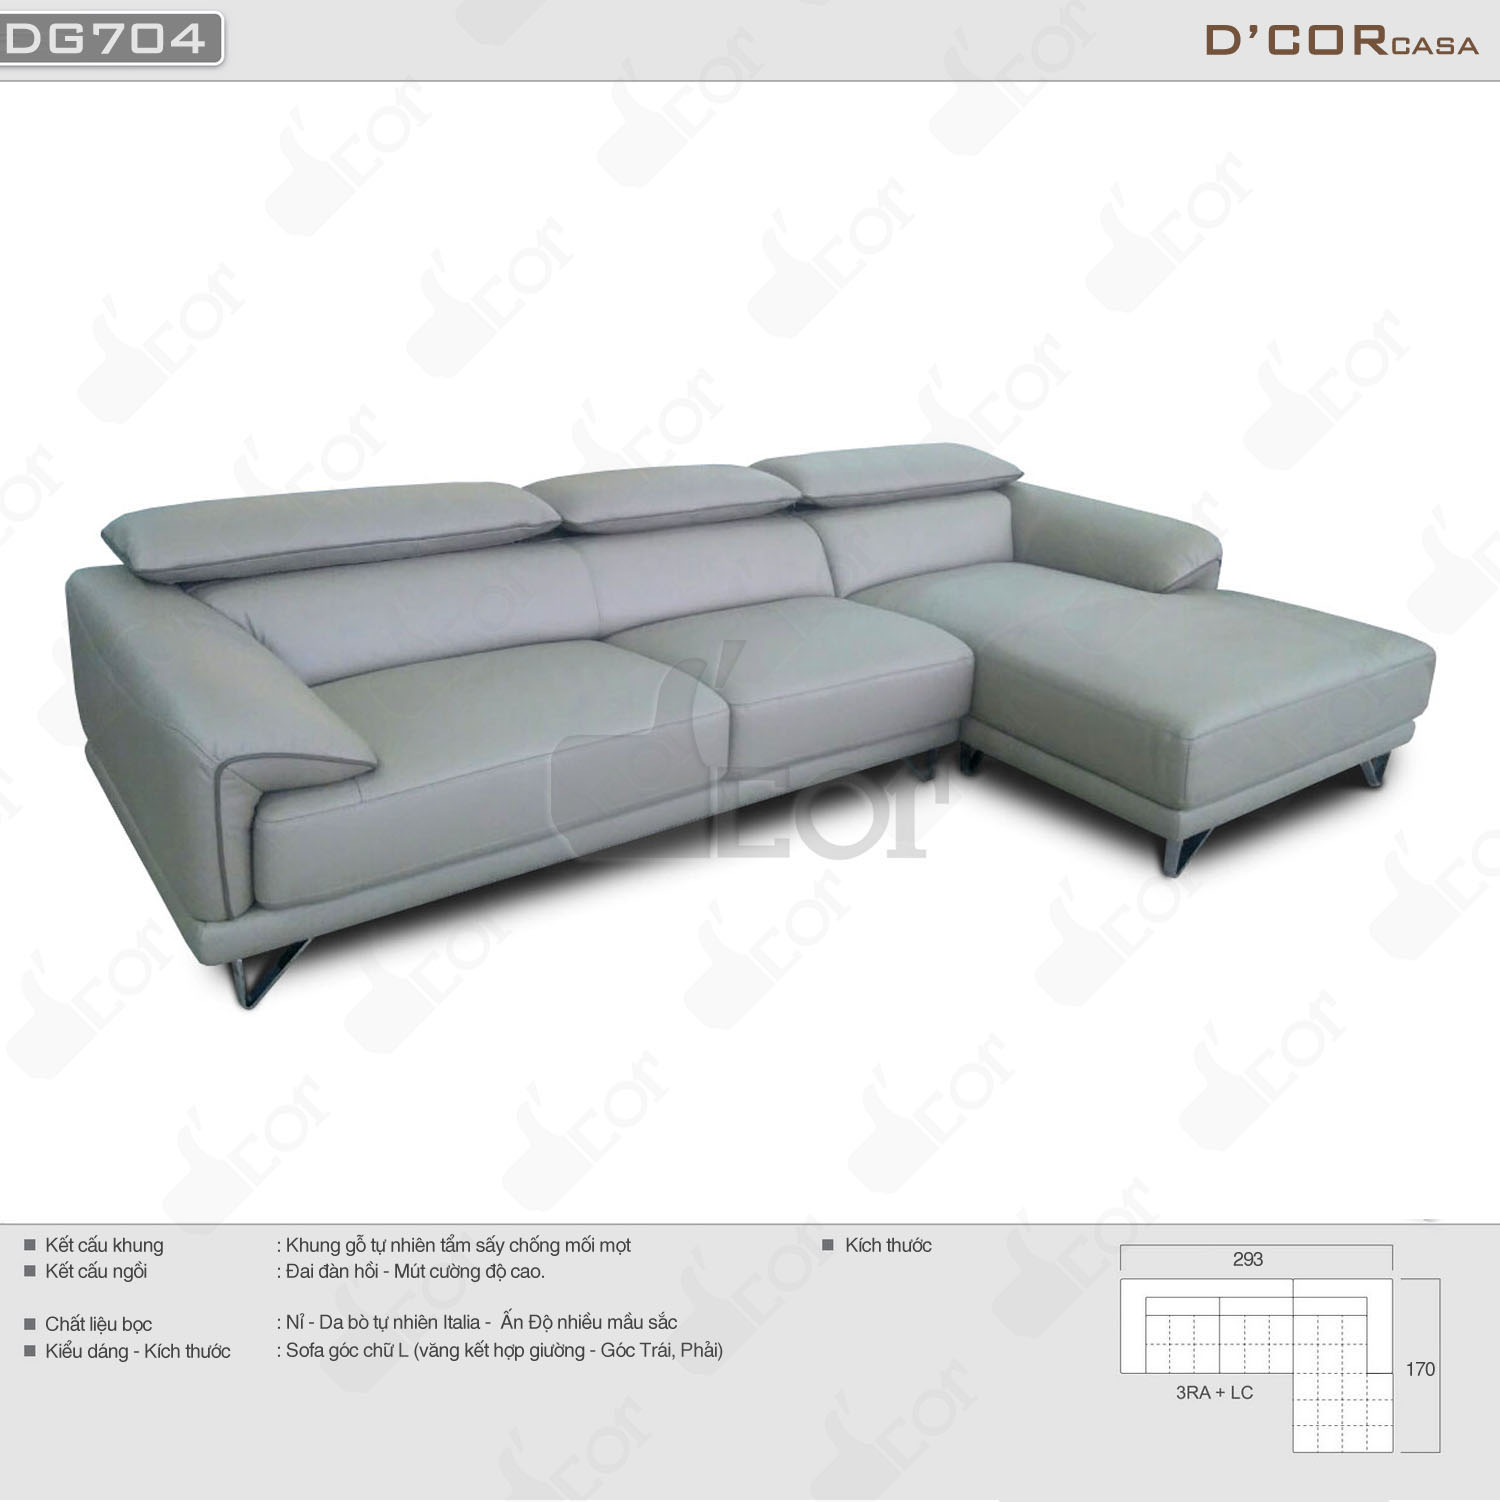 Ngất ngây với mẫu sofa da phòng khách cao cấp Malaysia DG704 sang chảnh > Ngất ngây với mẫu sofa da phòng khách cao cấp Malaysia DG704 sang chảnh